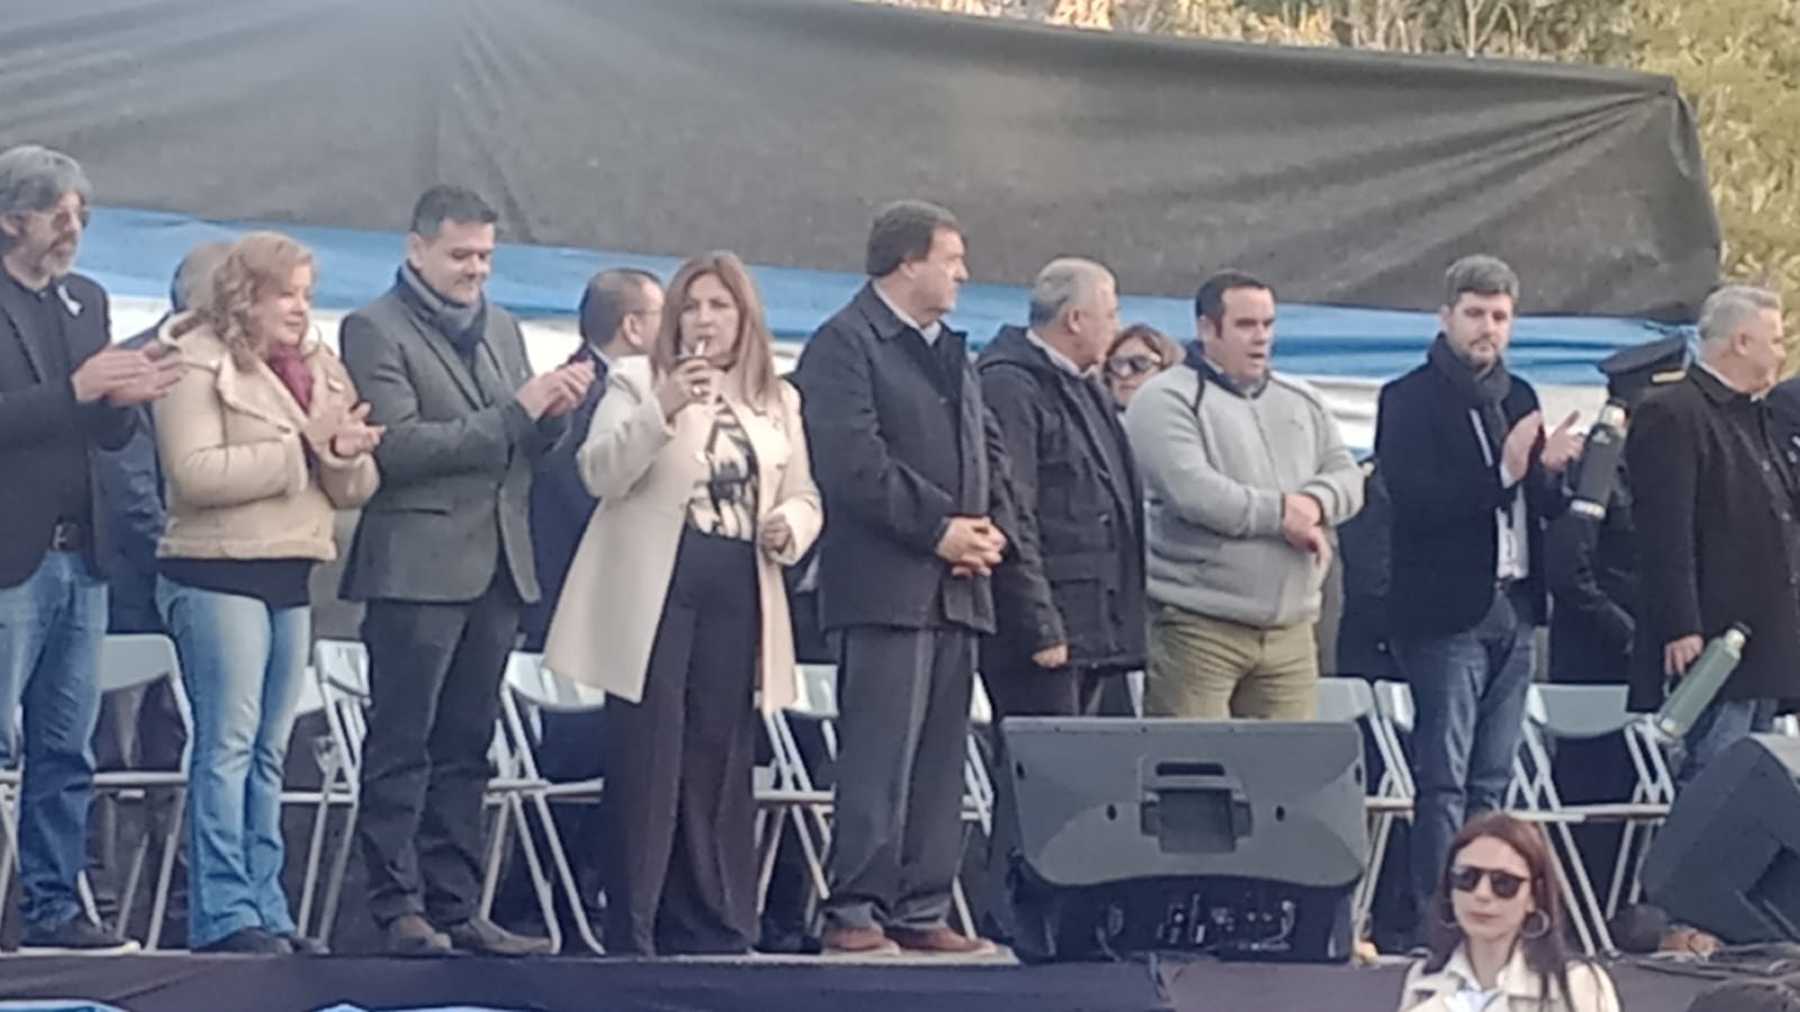 La intendenta de Catriel Daniela Salzotto junto al gobernador Alberto Weretilneck y otros funcionarios. (Gentileza)